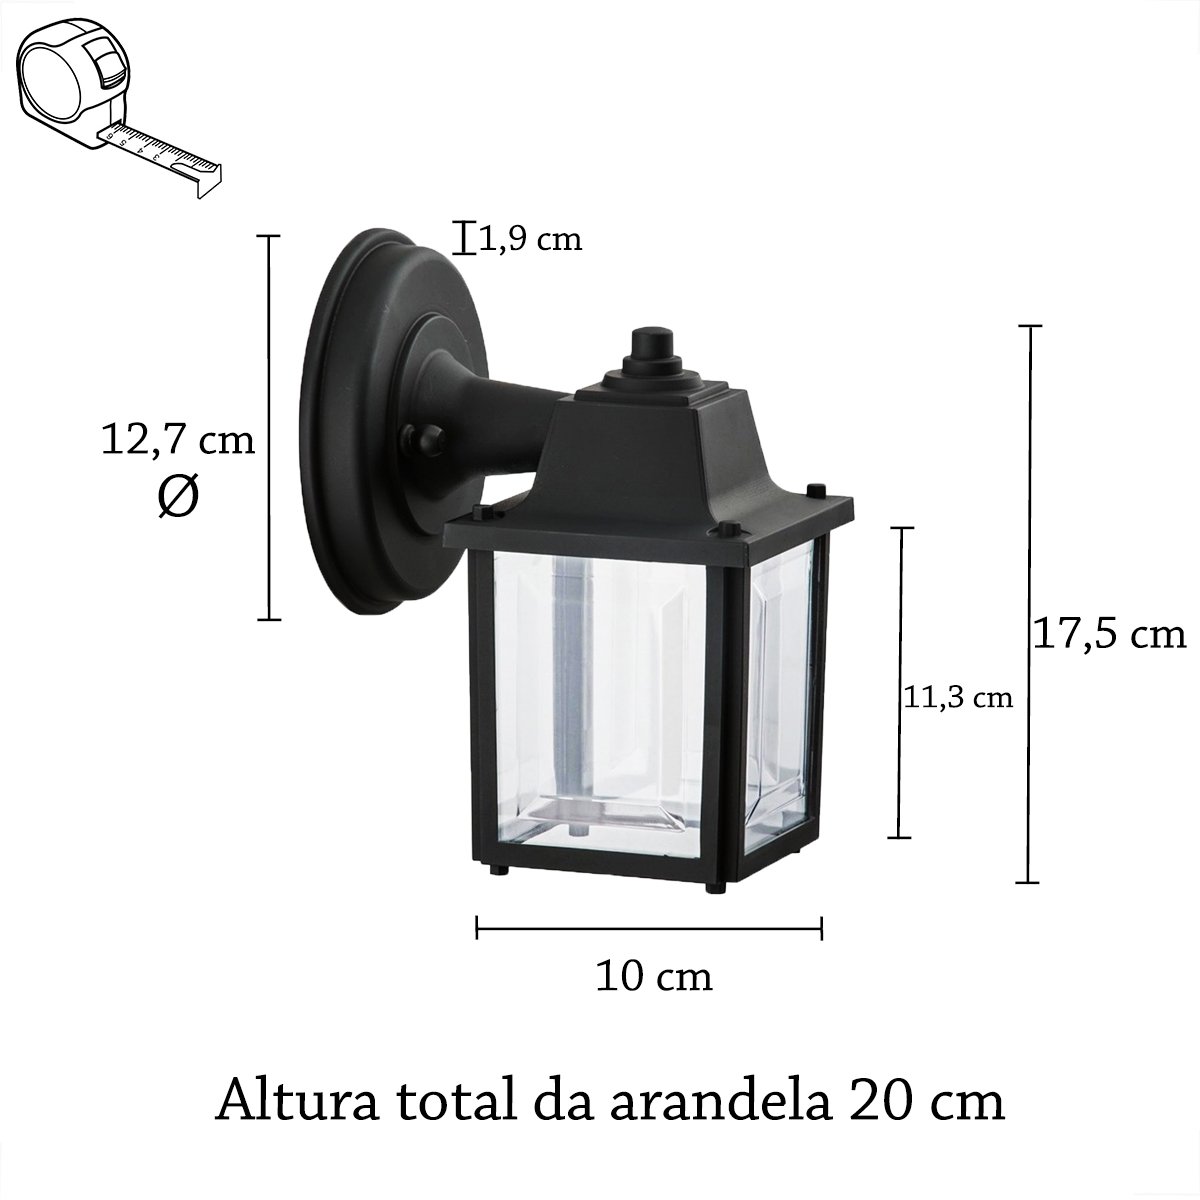 7 Luminária Arandela Externo Industrial Retro Preto Alz17 - 5